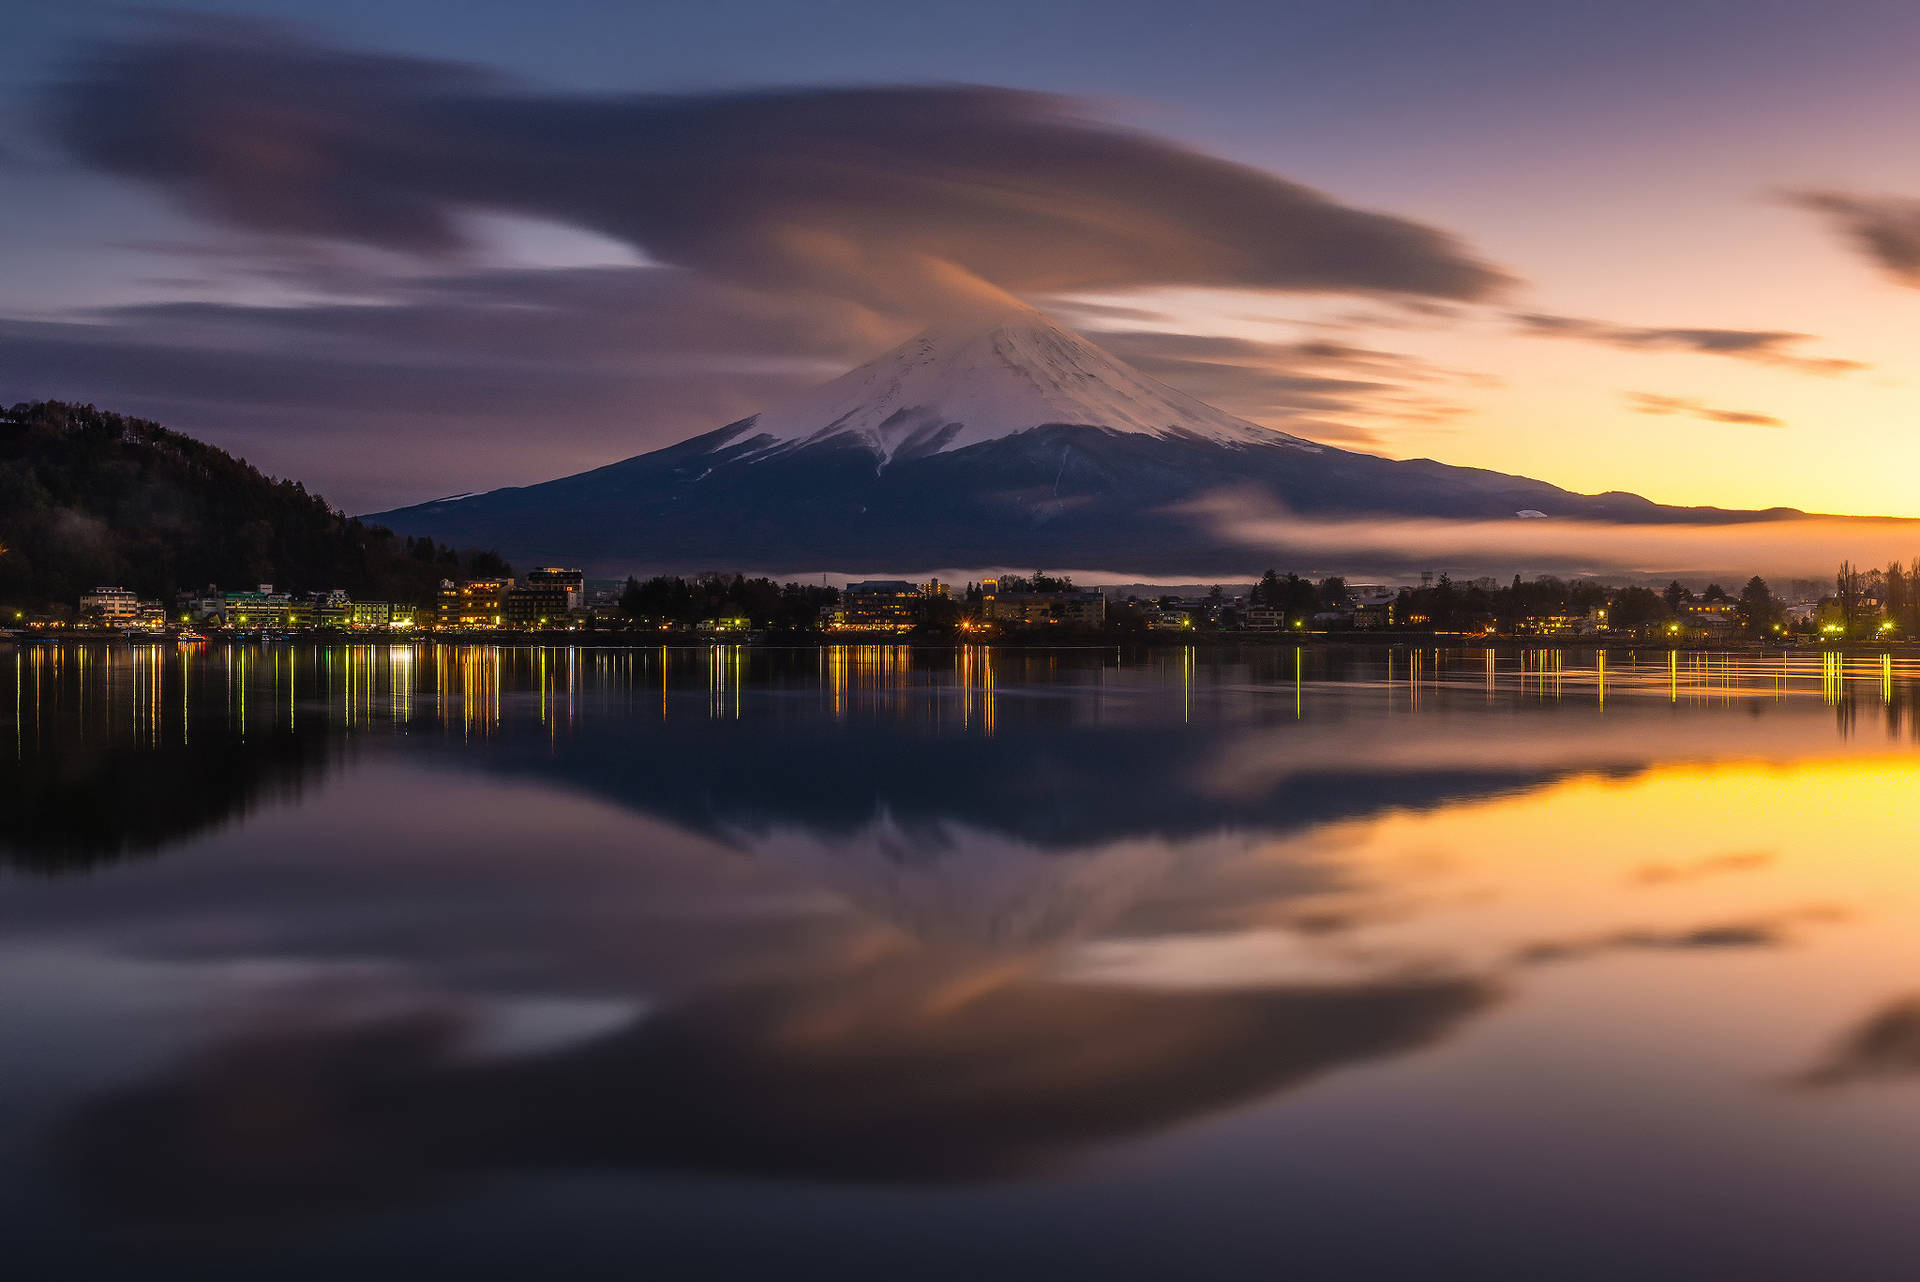 Mount Fuji Reflection Background